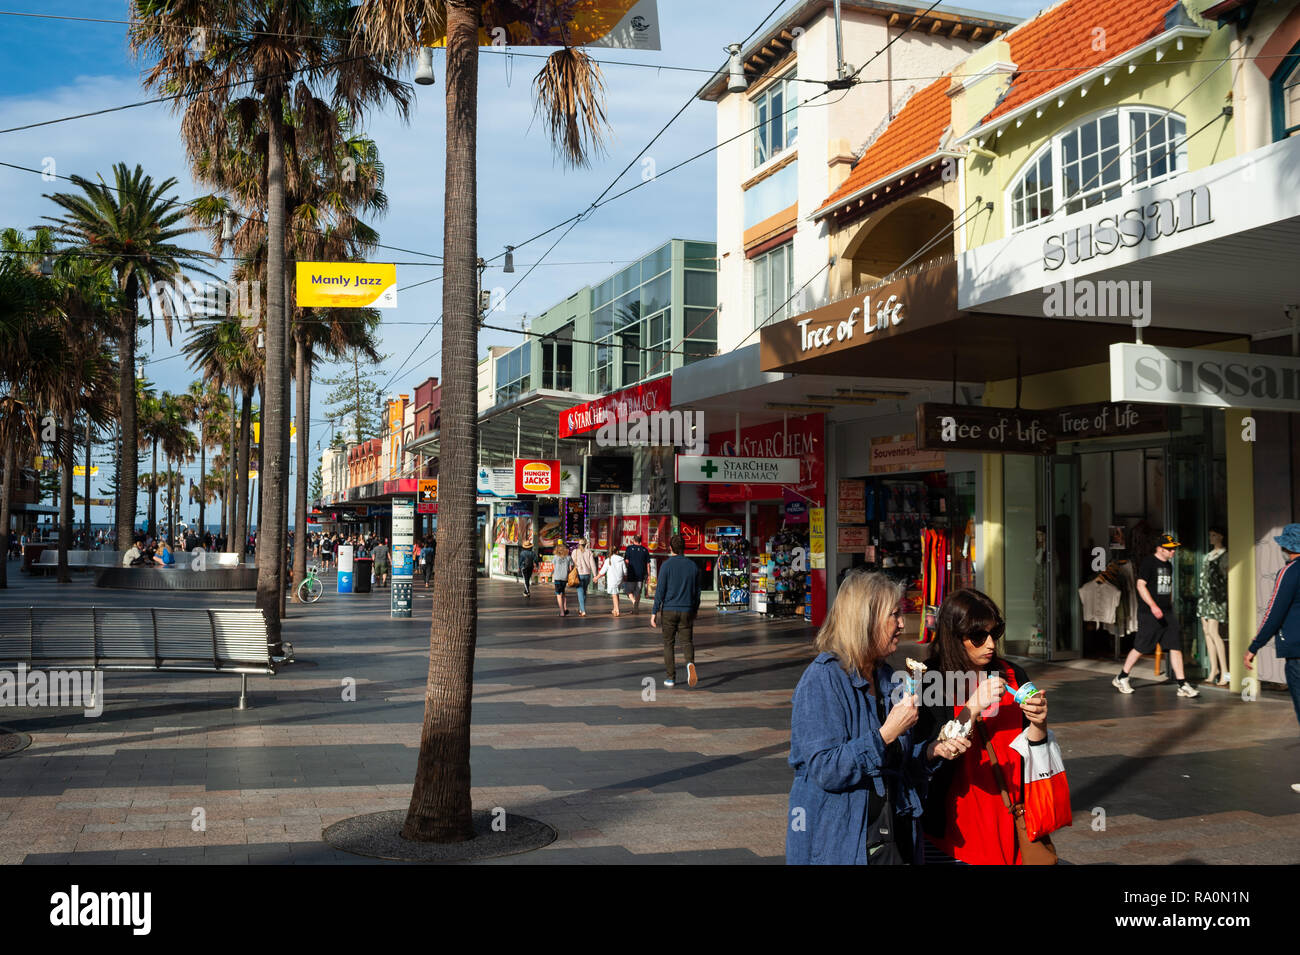 22.09.2018, Sydney, New South Wales, Australien - Menschen schlendern den Manly Corso entlang, einer Einkaufs- und Fussgaengerzone in einem nordoestli Stock Photo